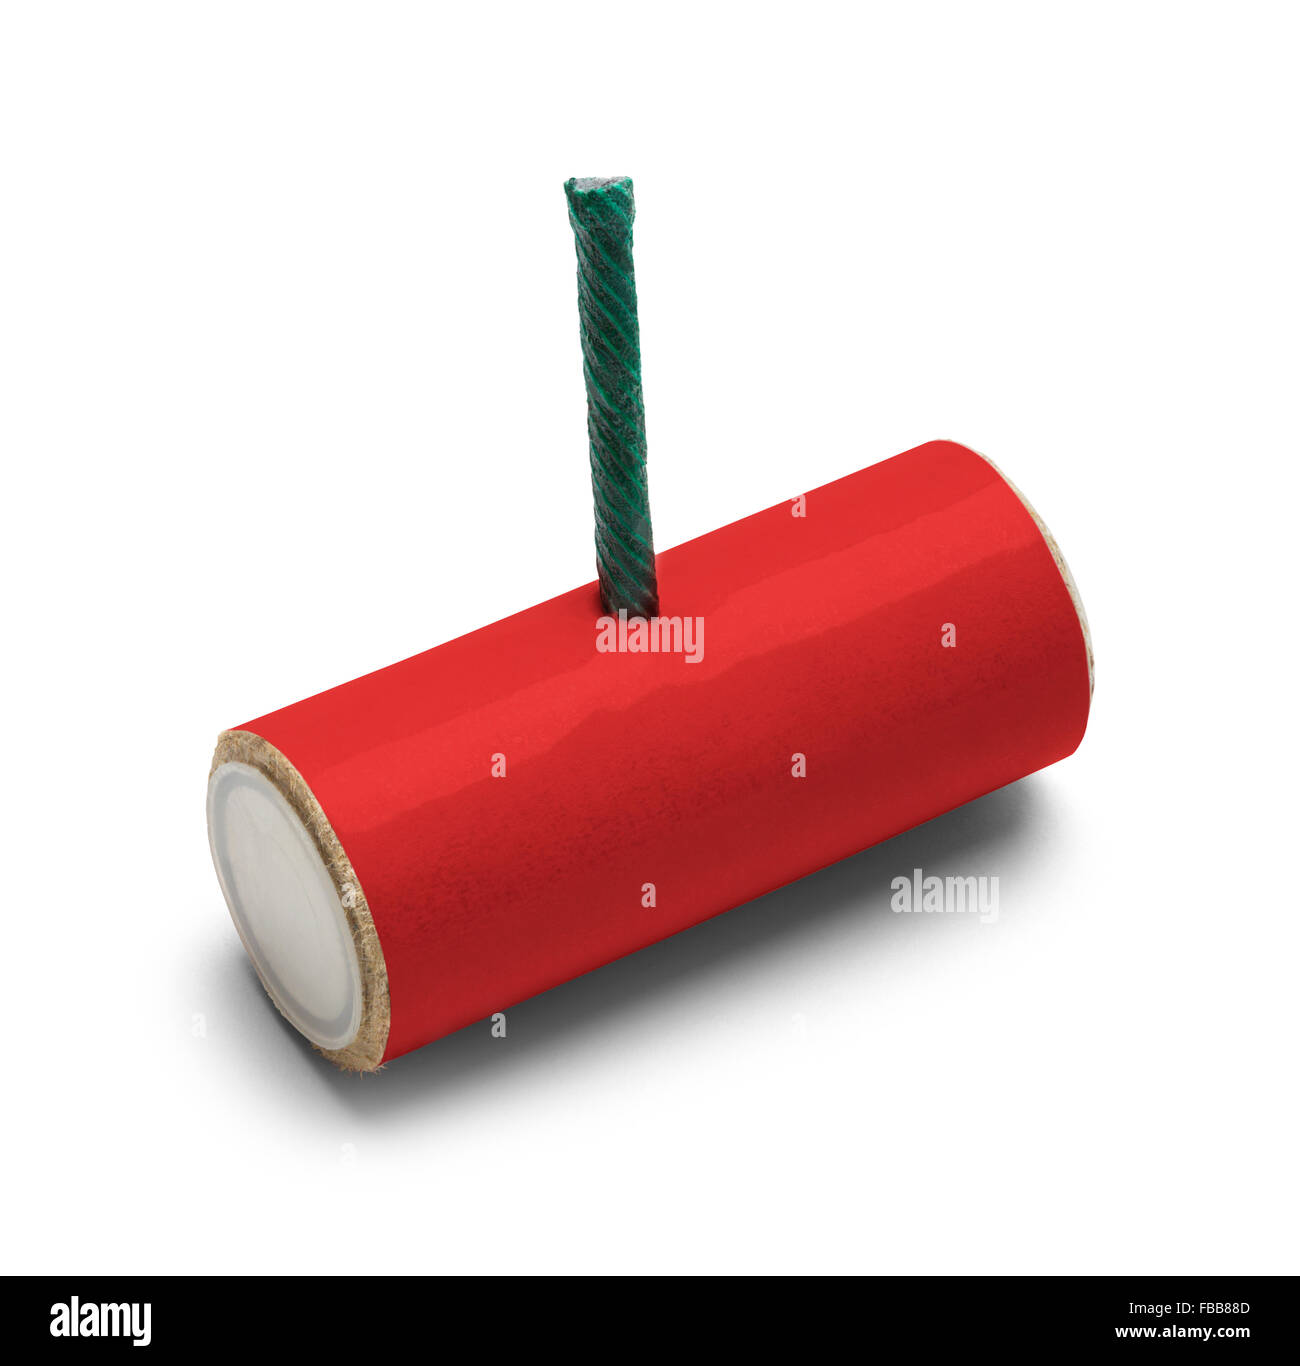 Rote M-80 Feuerwerkskörper mit textfreiraum Isolated on White Background. Stockfoto